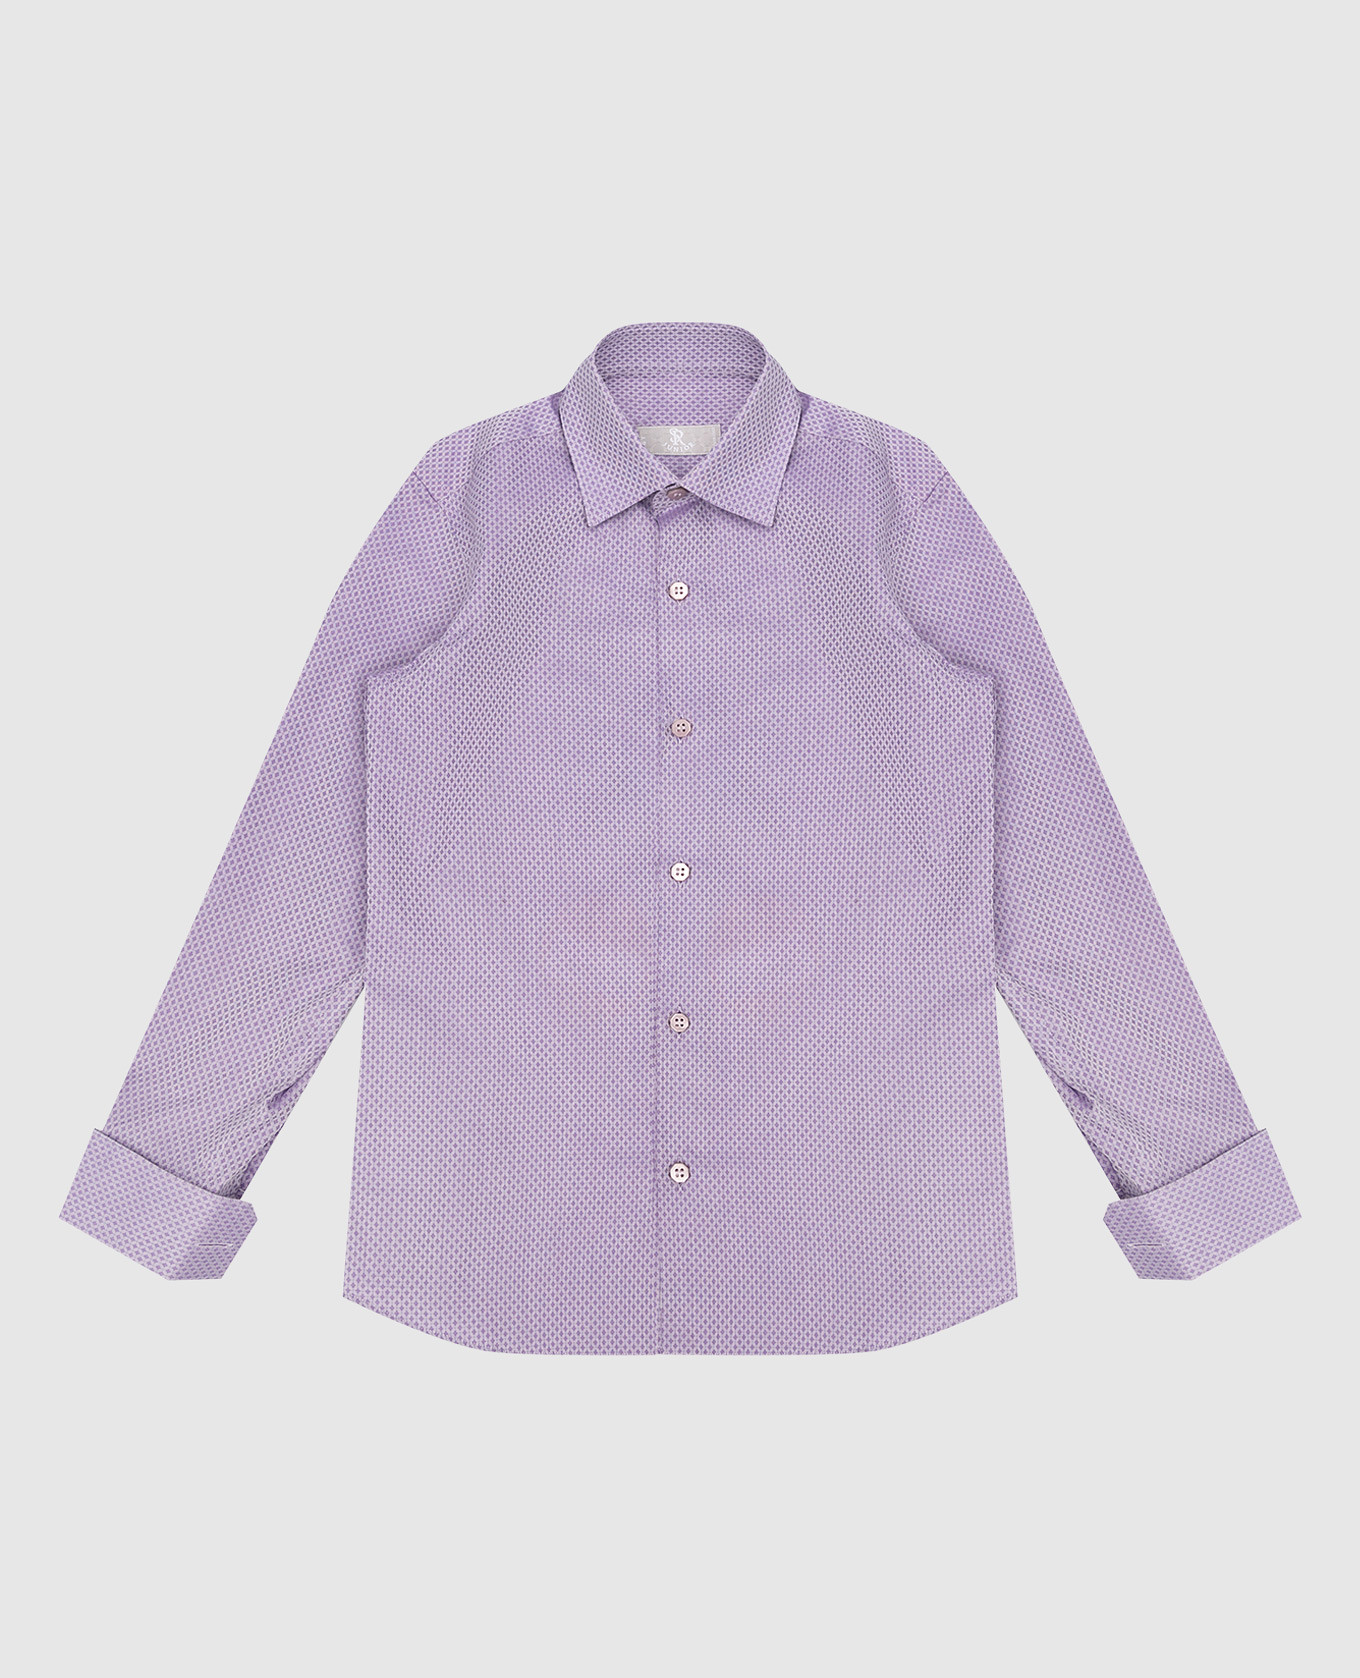 Детская фиолетовая рубашка в геометрический узор.